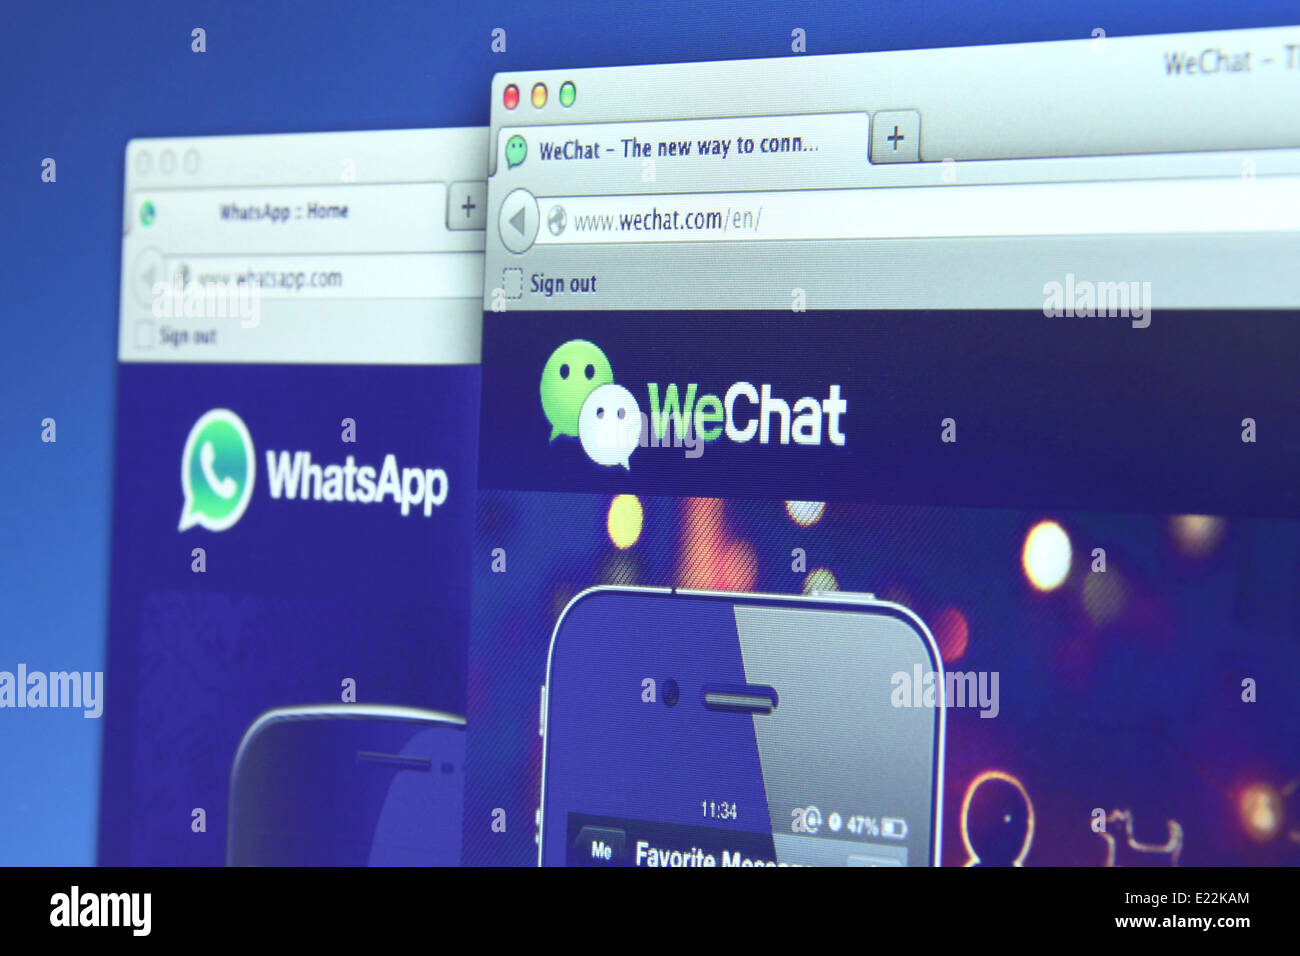 Photo de WhatsApp et WeChat sur un écran de surveillance. Ils sont célèbres pour les smartphones l'application de messagerie instantanée Banque D'Images